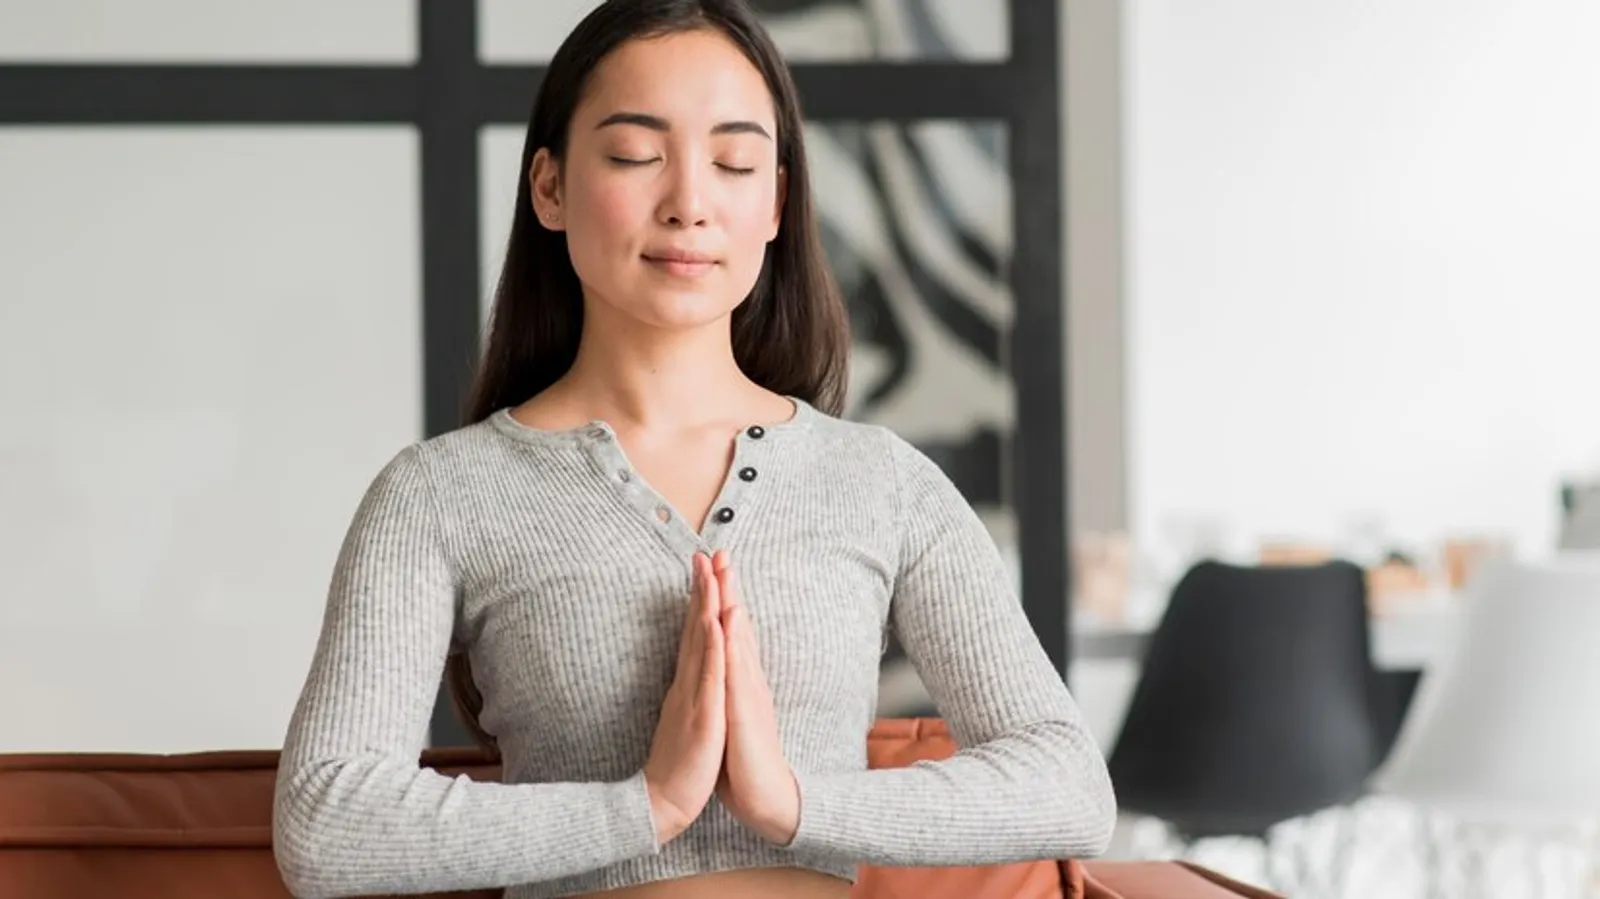 Manfaat Meditasi Bagi Kesehatan Mental dan Fisik yang Wajib Diketahui